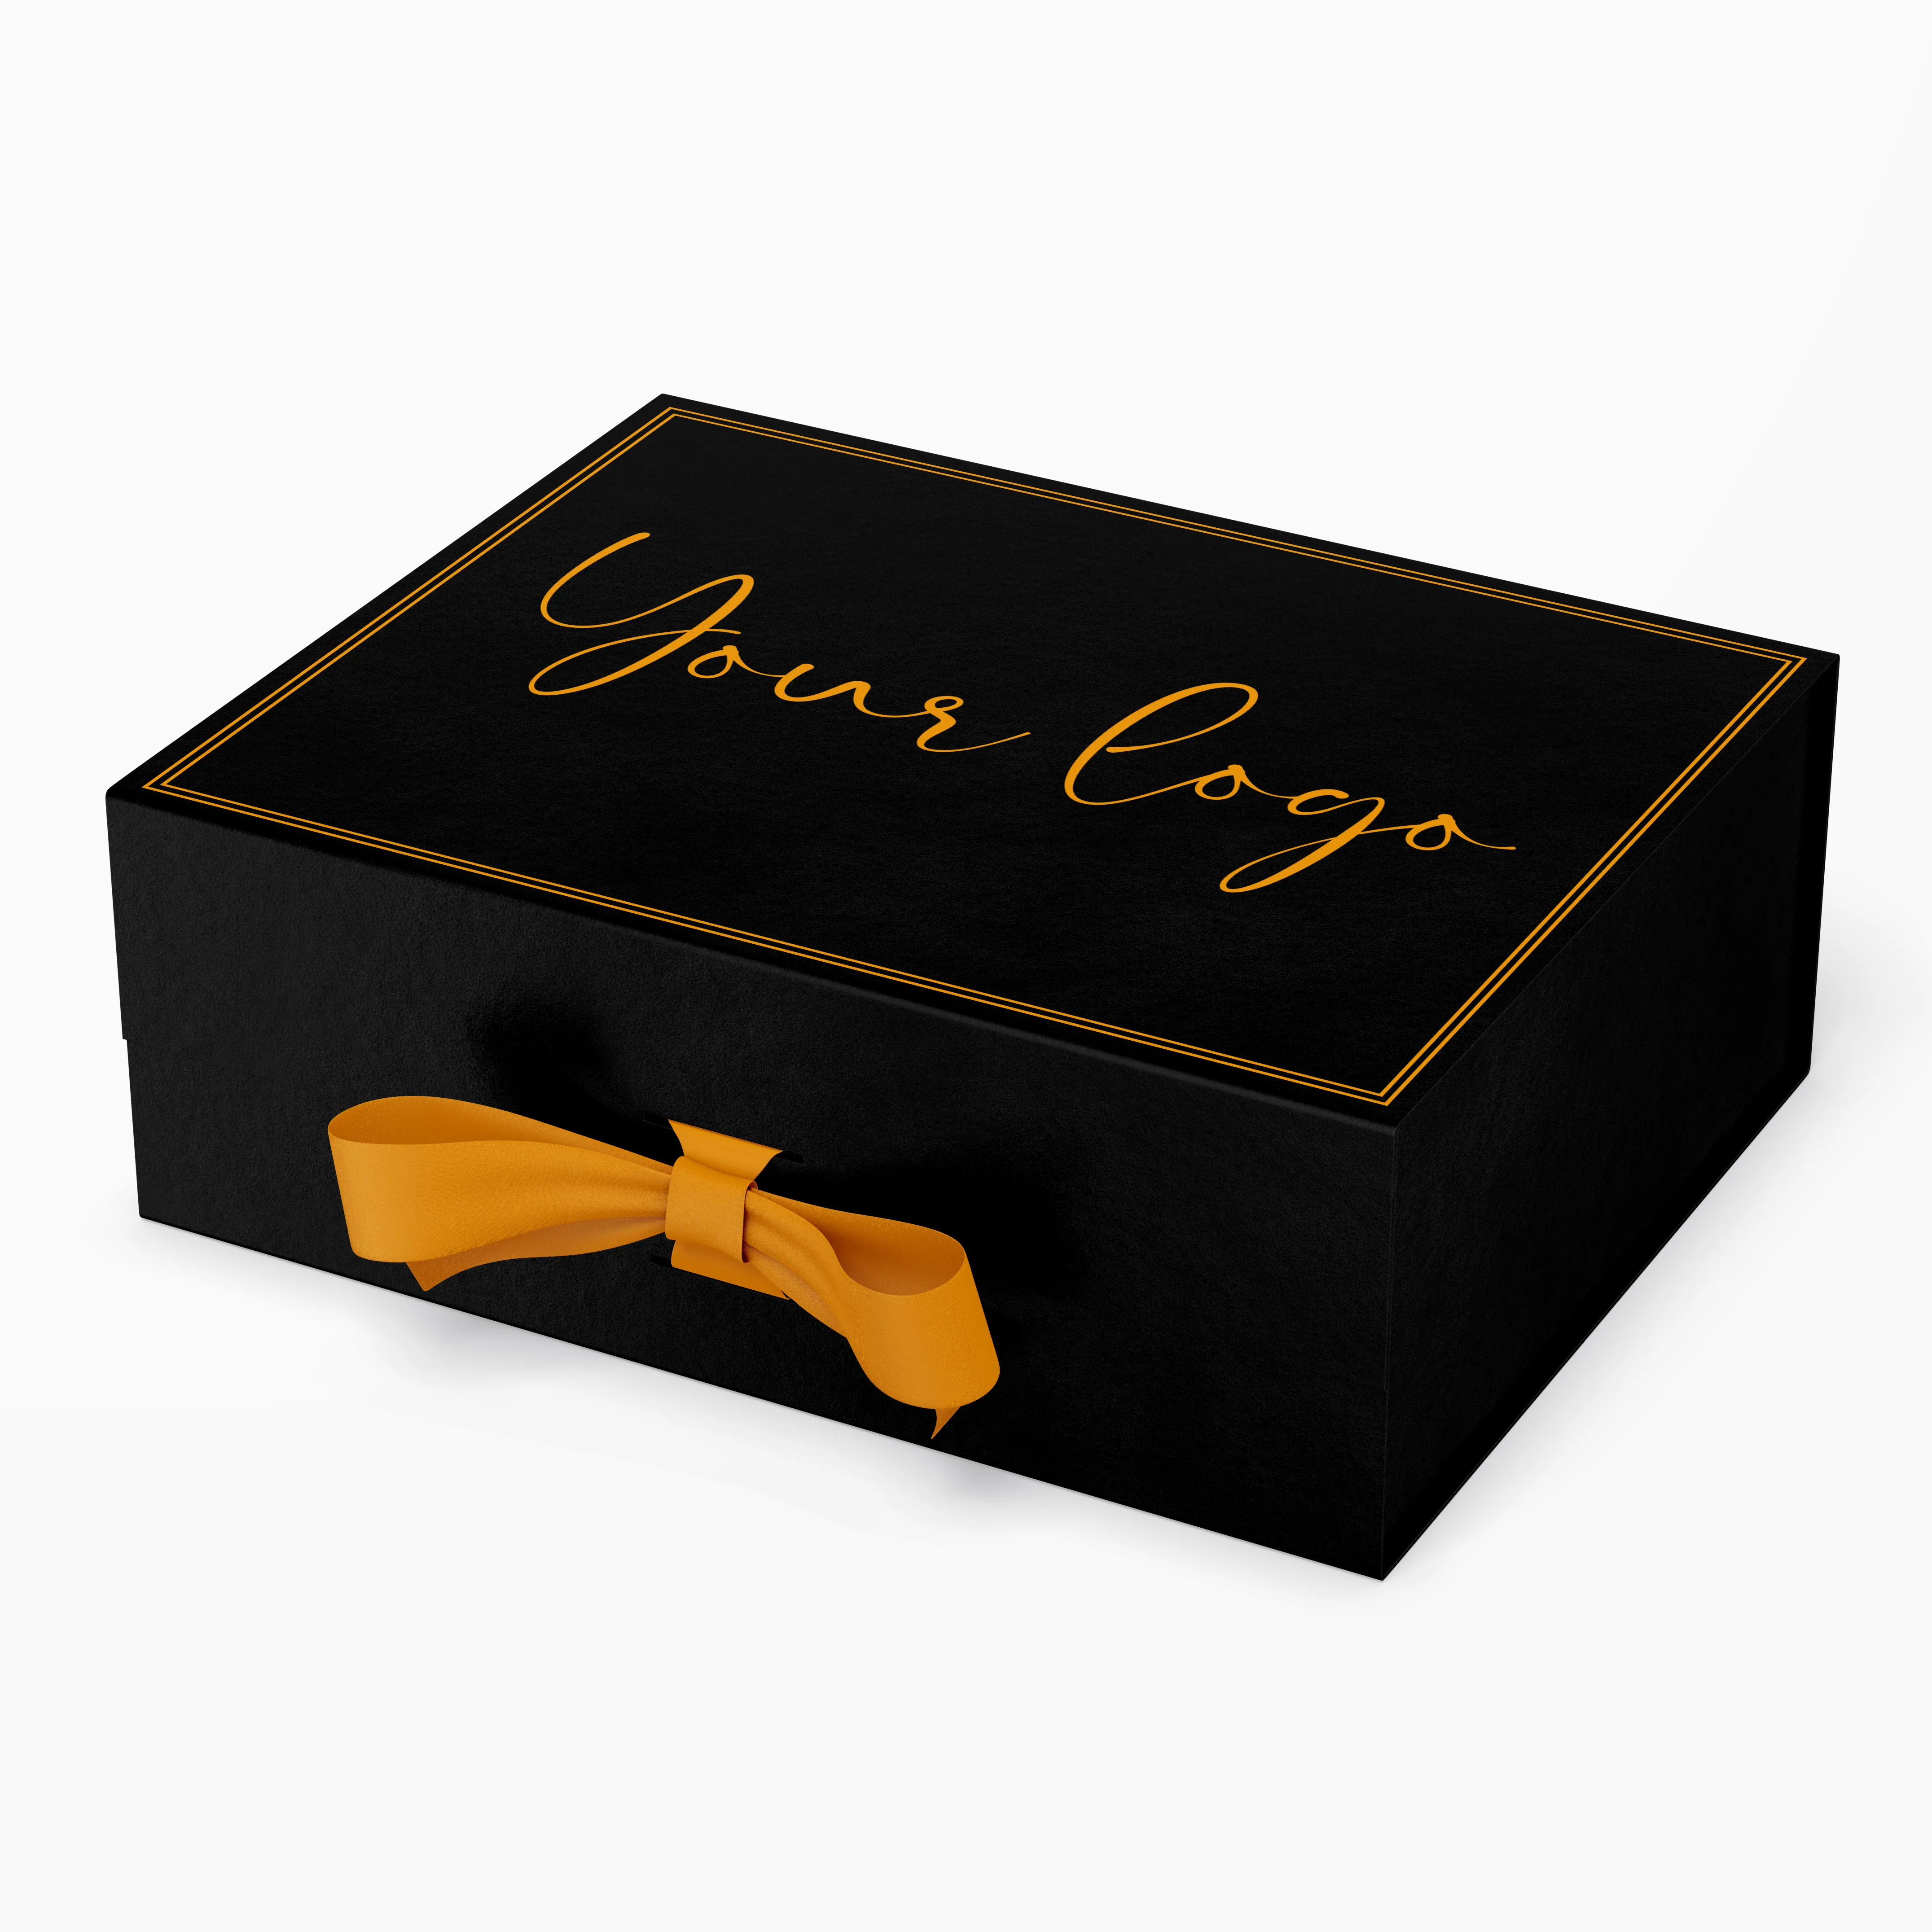 Vente en gros de boîtes-cadeaux pliantes à fermeture magnétique personnalisées avec ruban emballage de cadeau de mariage boîte en papier rigide magnétique